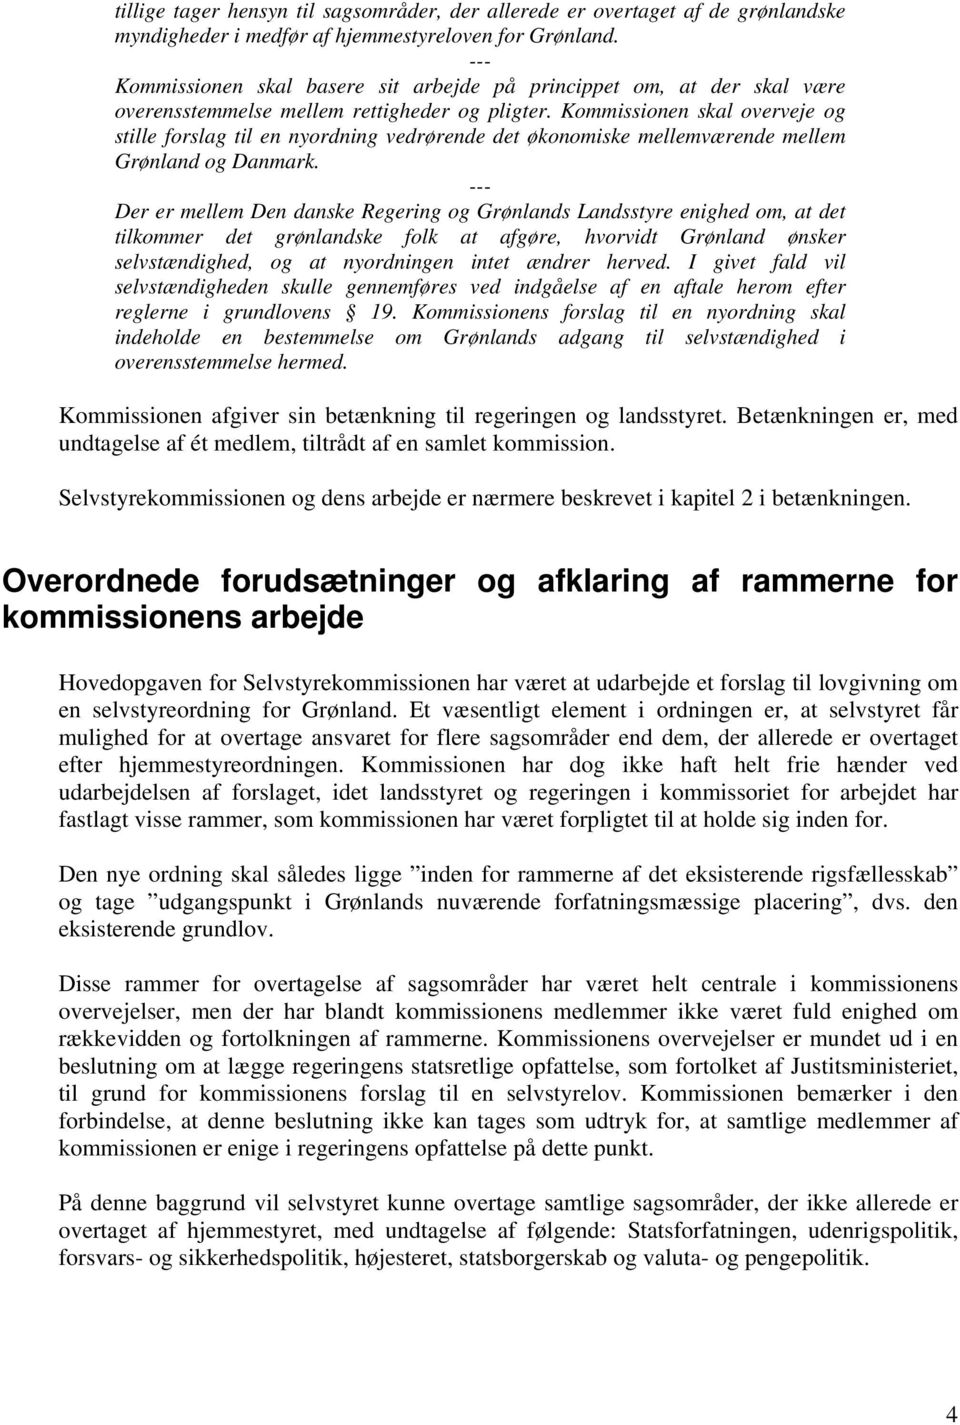 Kommissionen skal overveje og stille forslag til en nyordning vedrørende det økonomiske mellemværende mellem Grønland og Danmark.